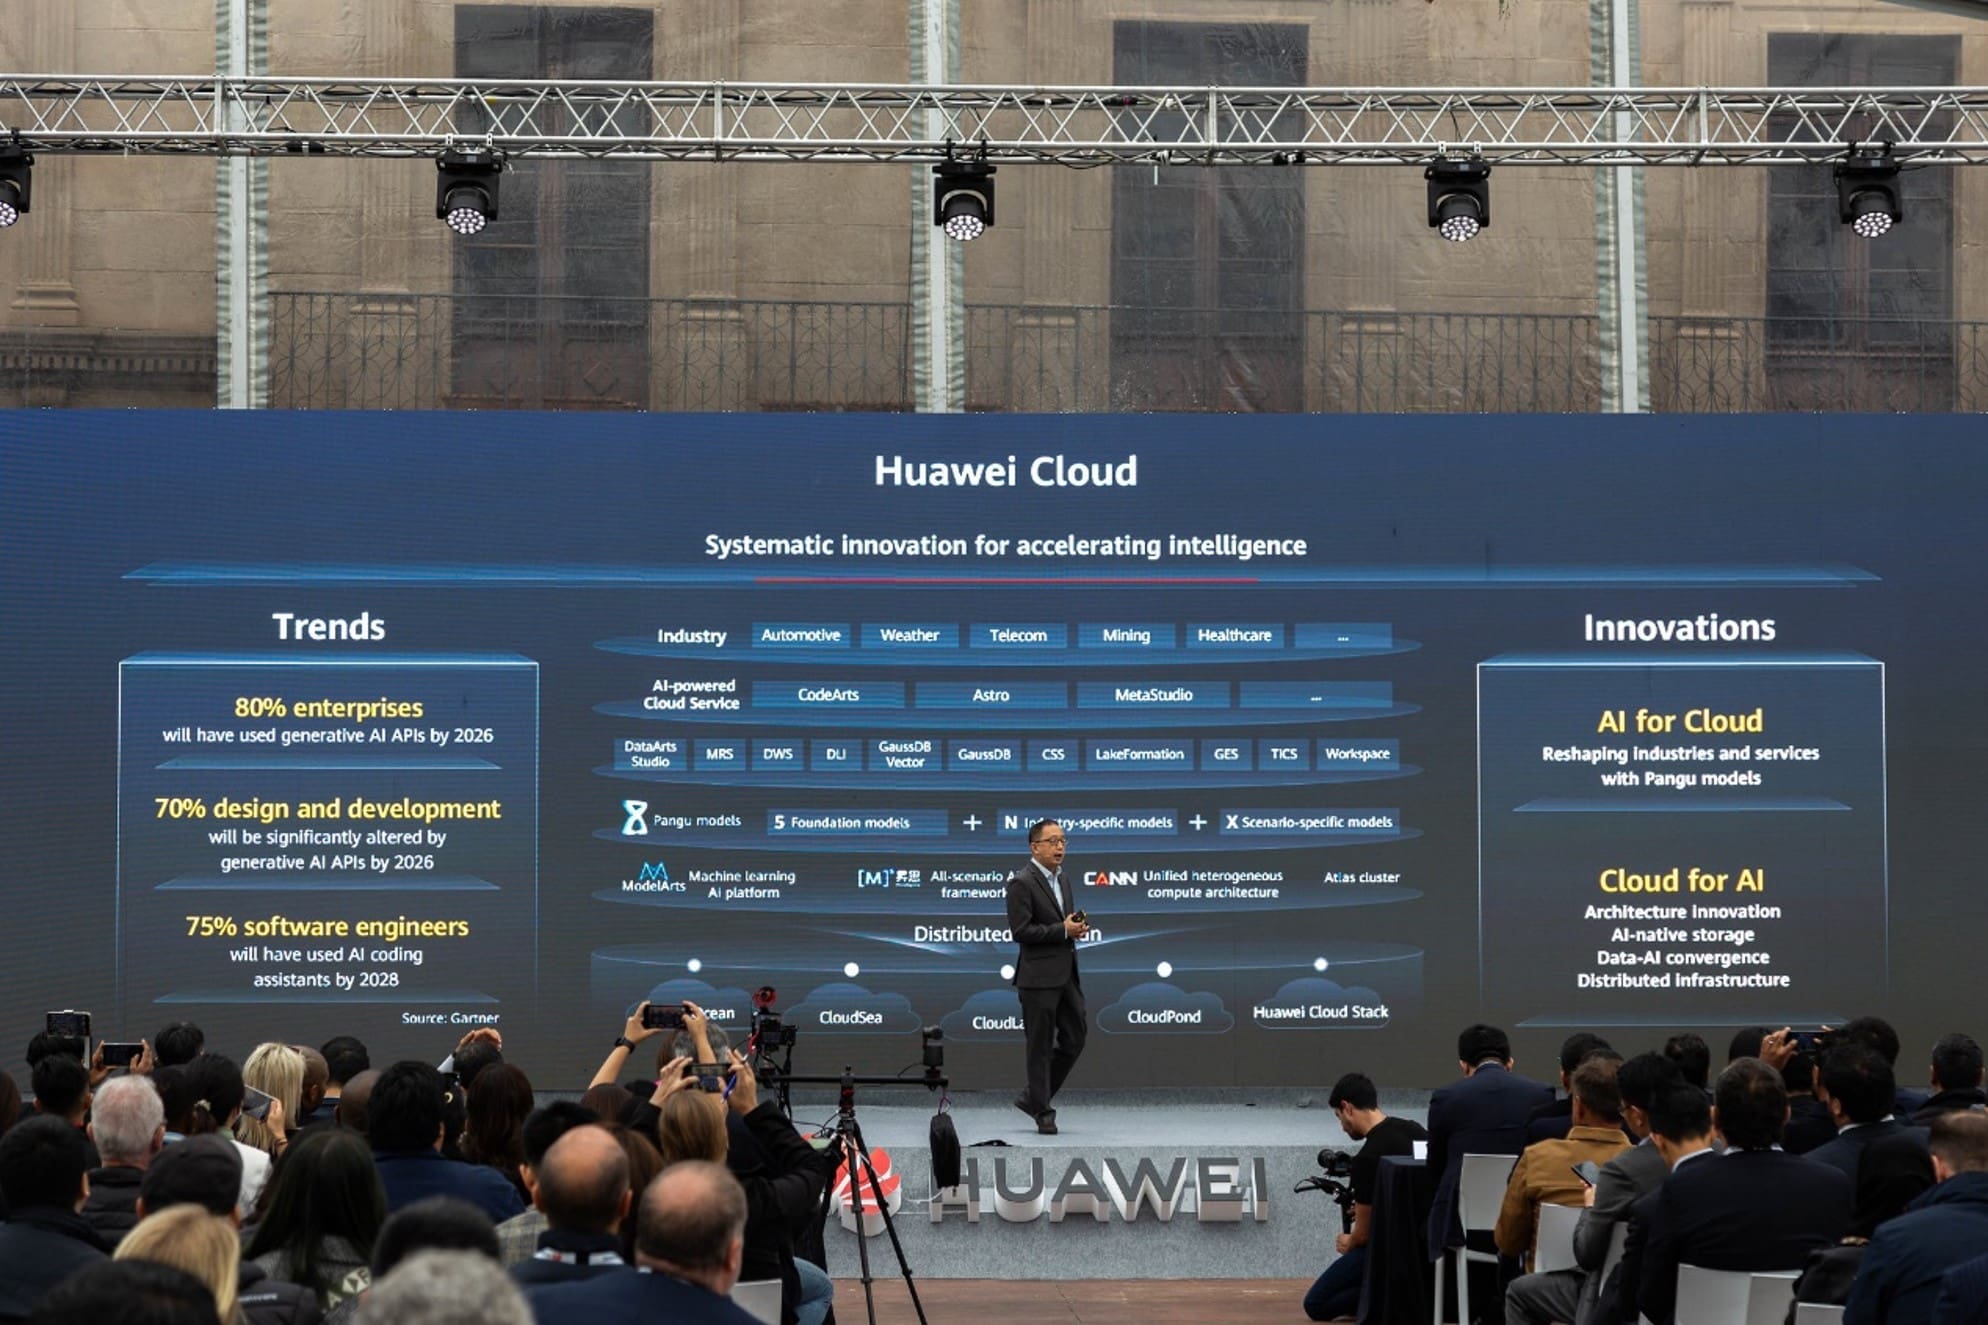 Huawei Cloud CTO Bruno Zhang